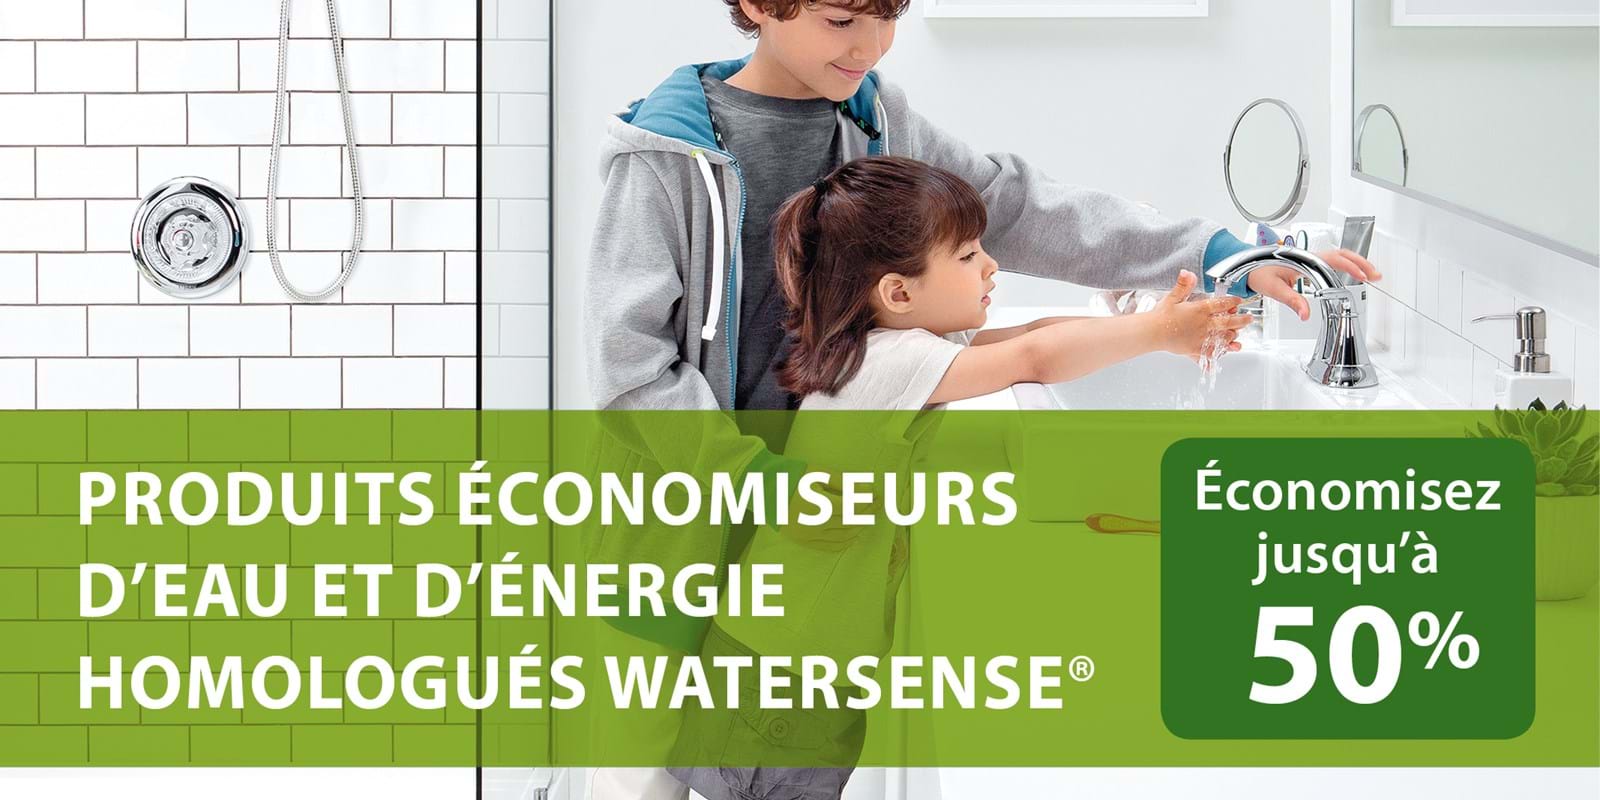 Produits économiseurs d’eau et d’énergie homologués WaterSense®